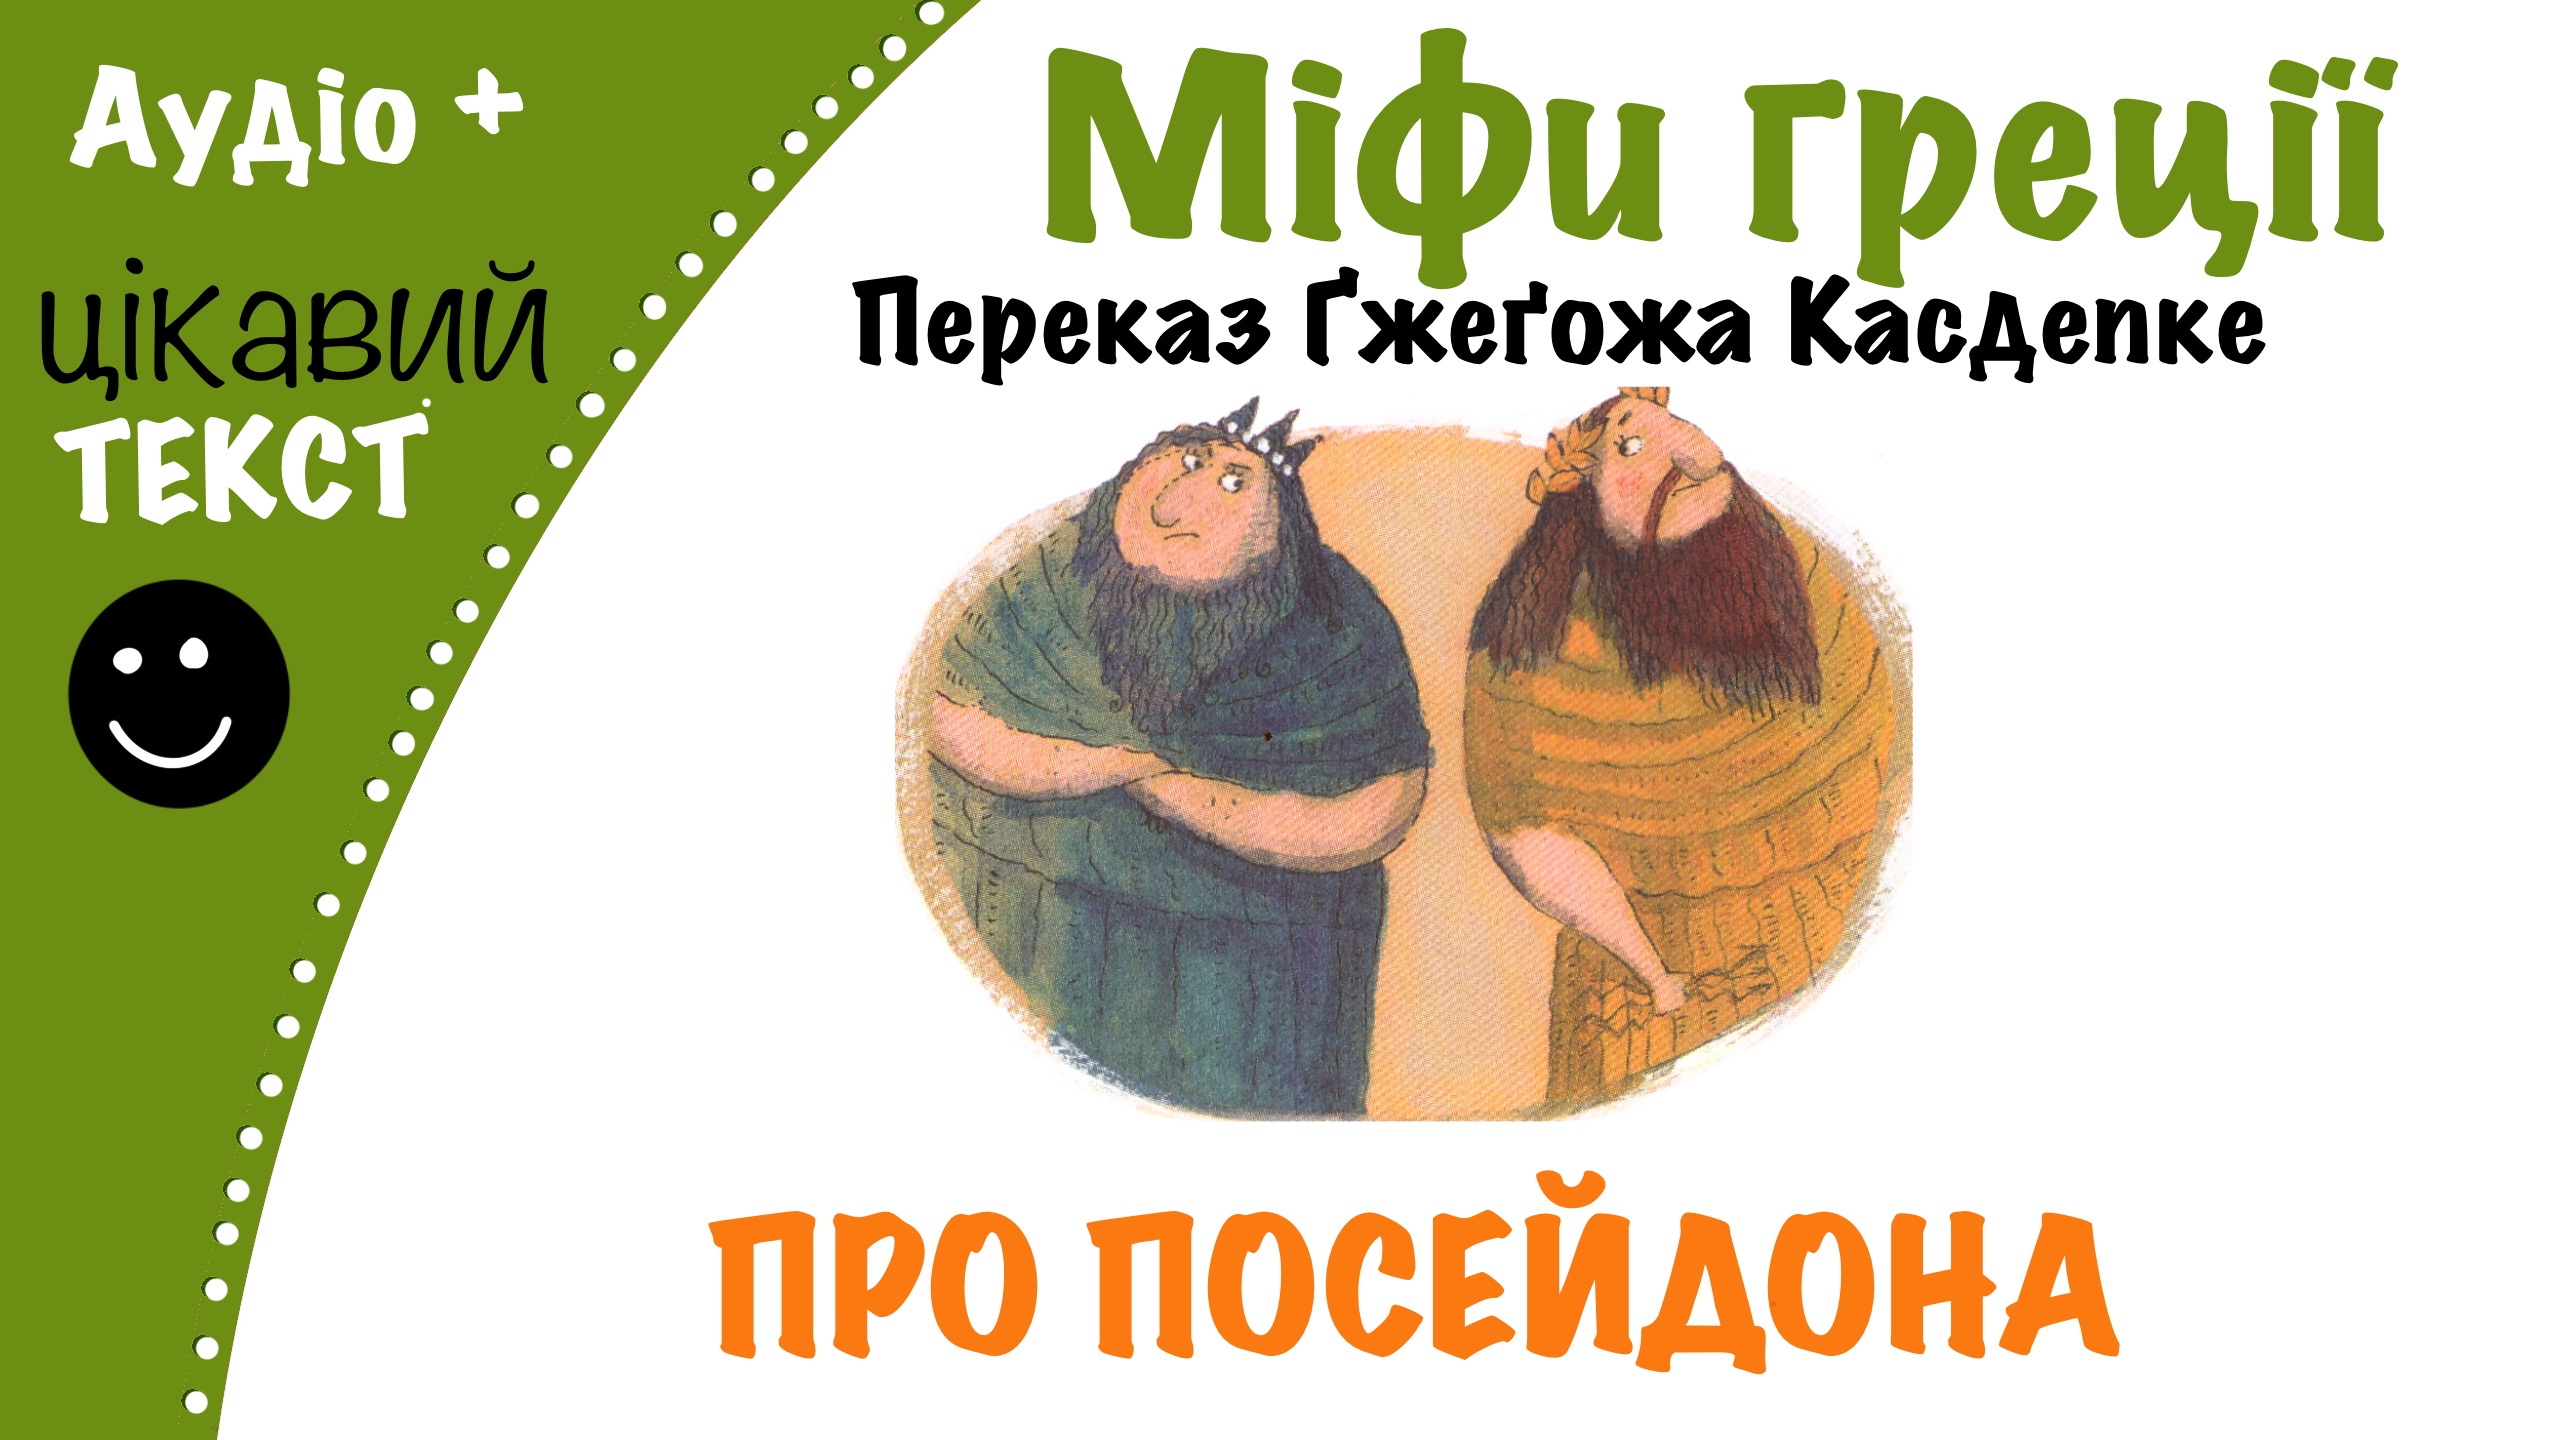 Перейти до: Грецький міф про Посейдона. Переказ Ґжеґожа Касдепке